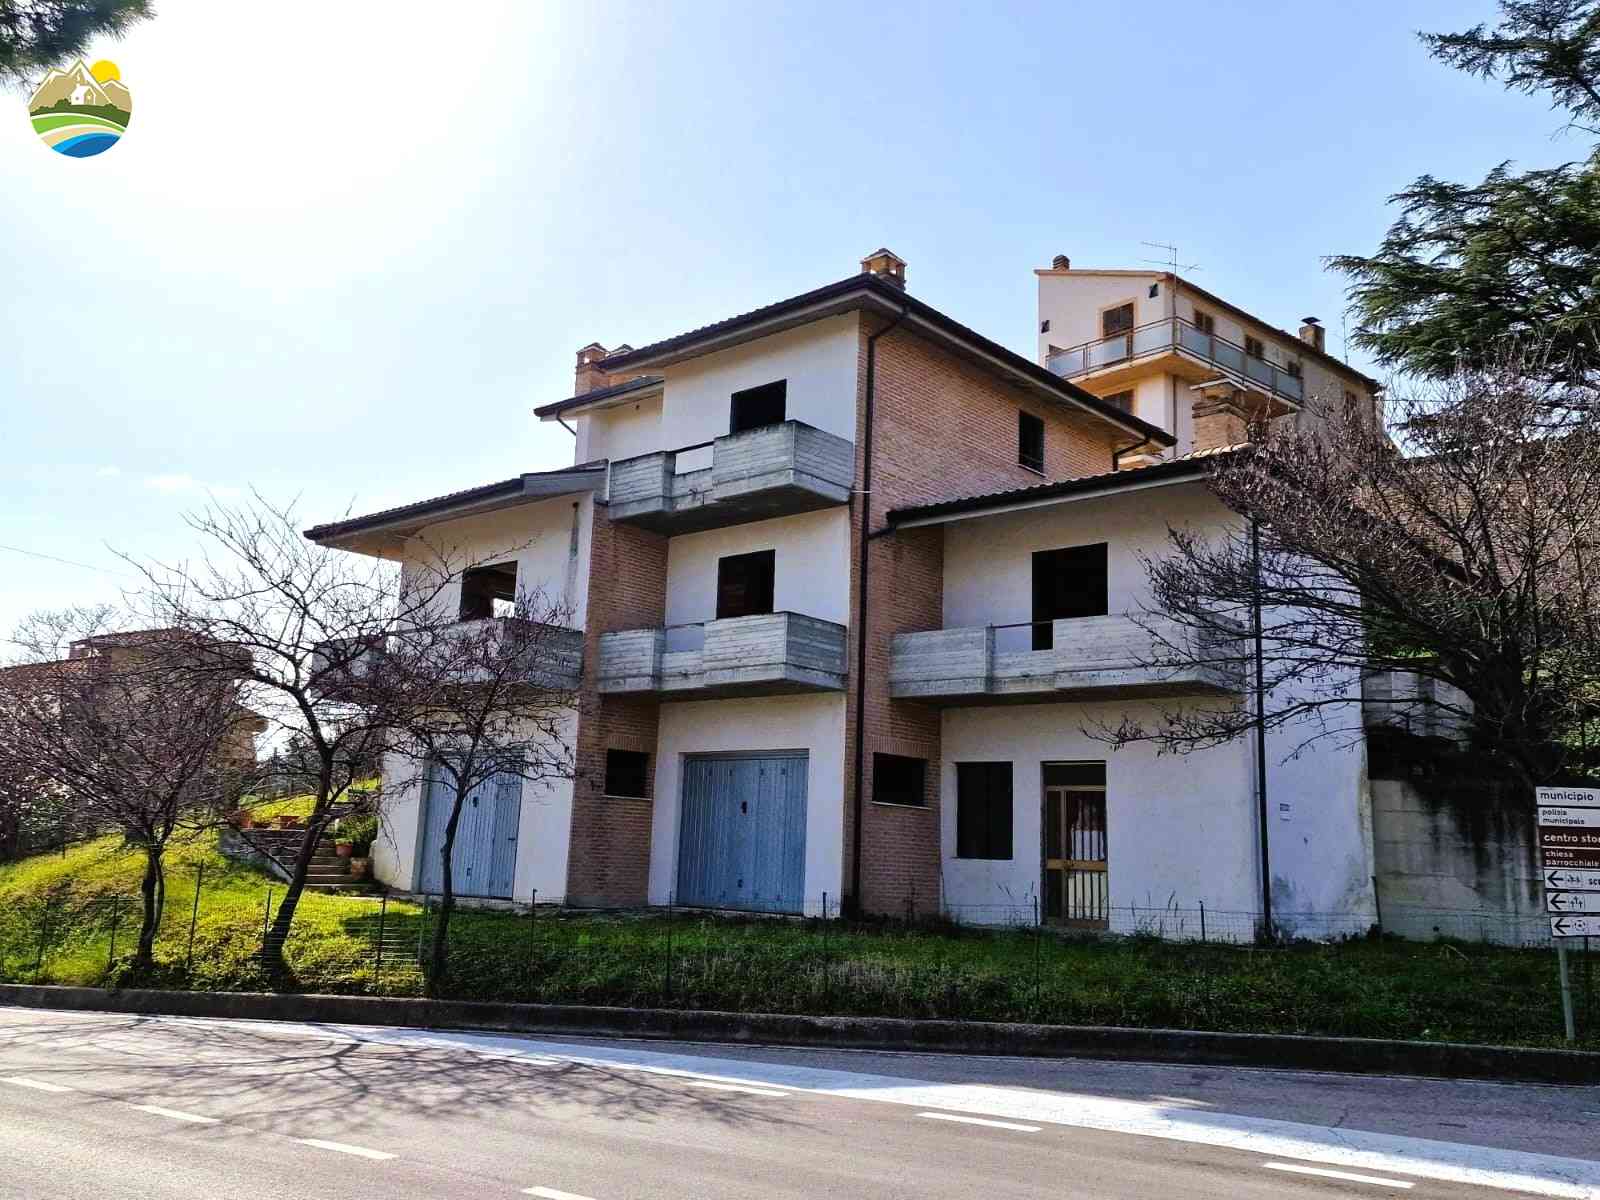 Villa Villa Mandorlo - Castilenti - EUR 127.038